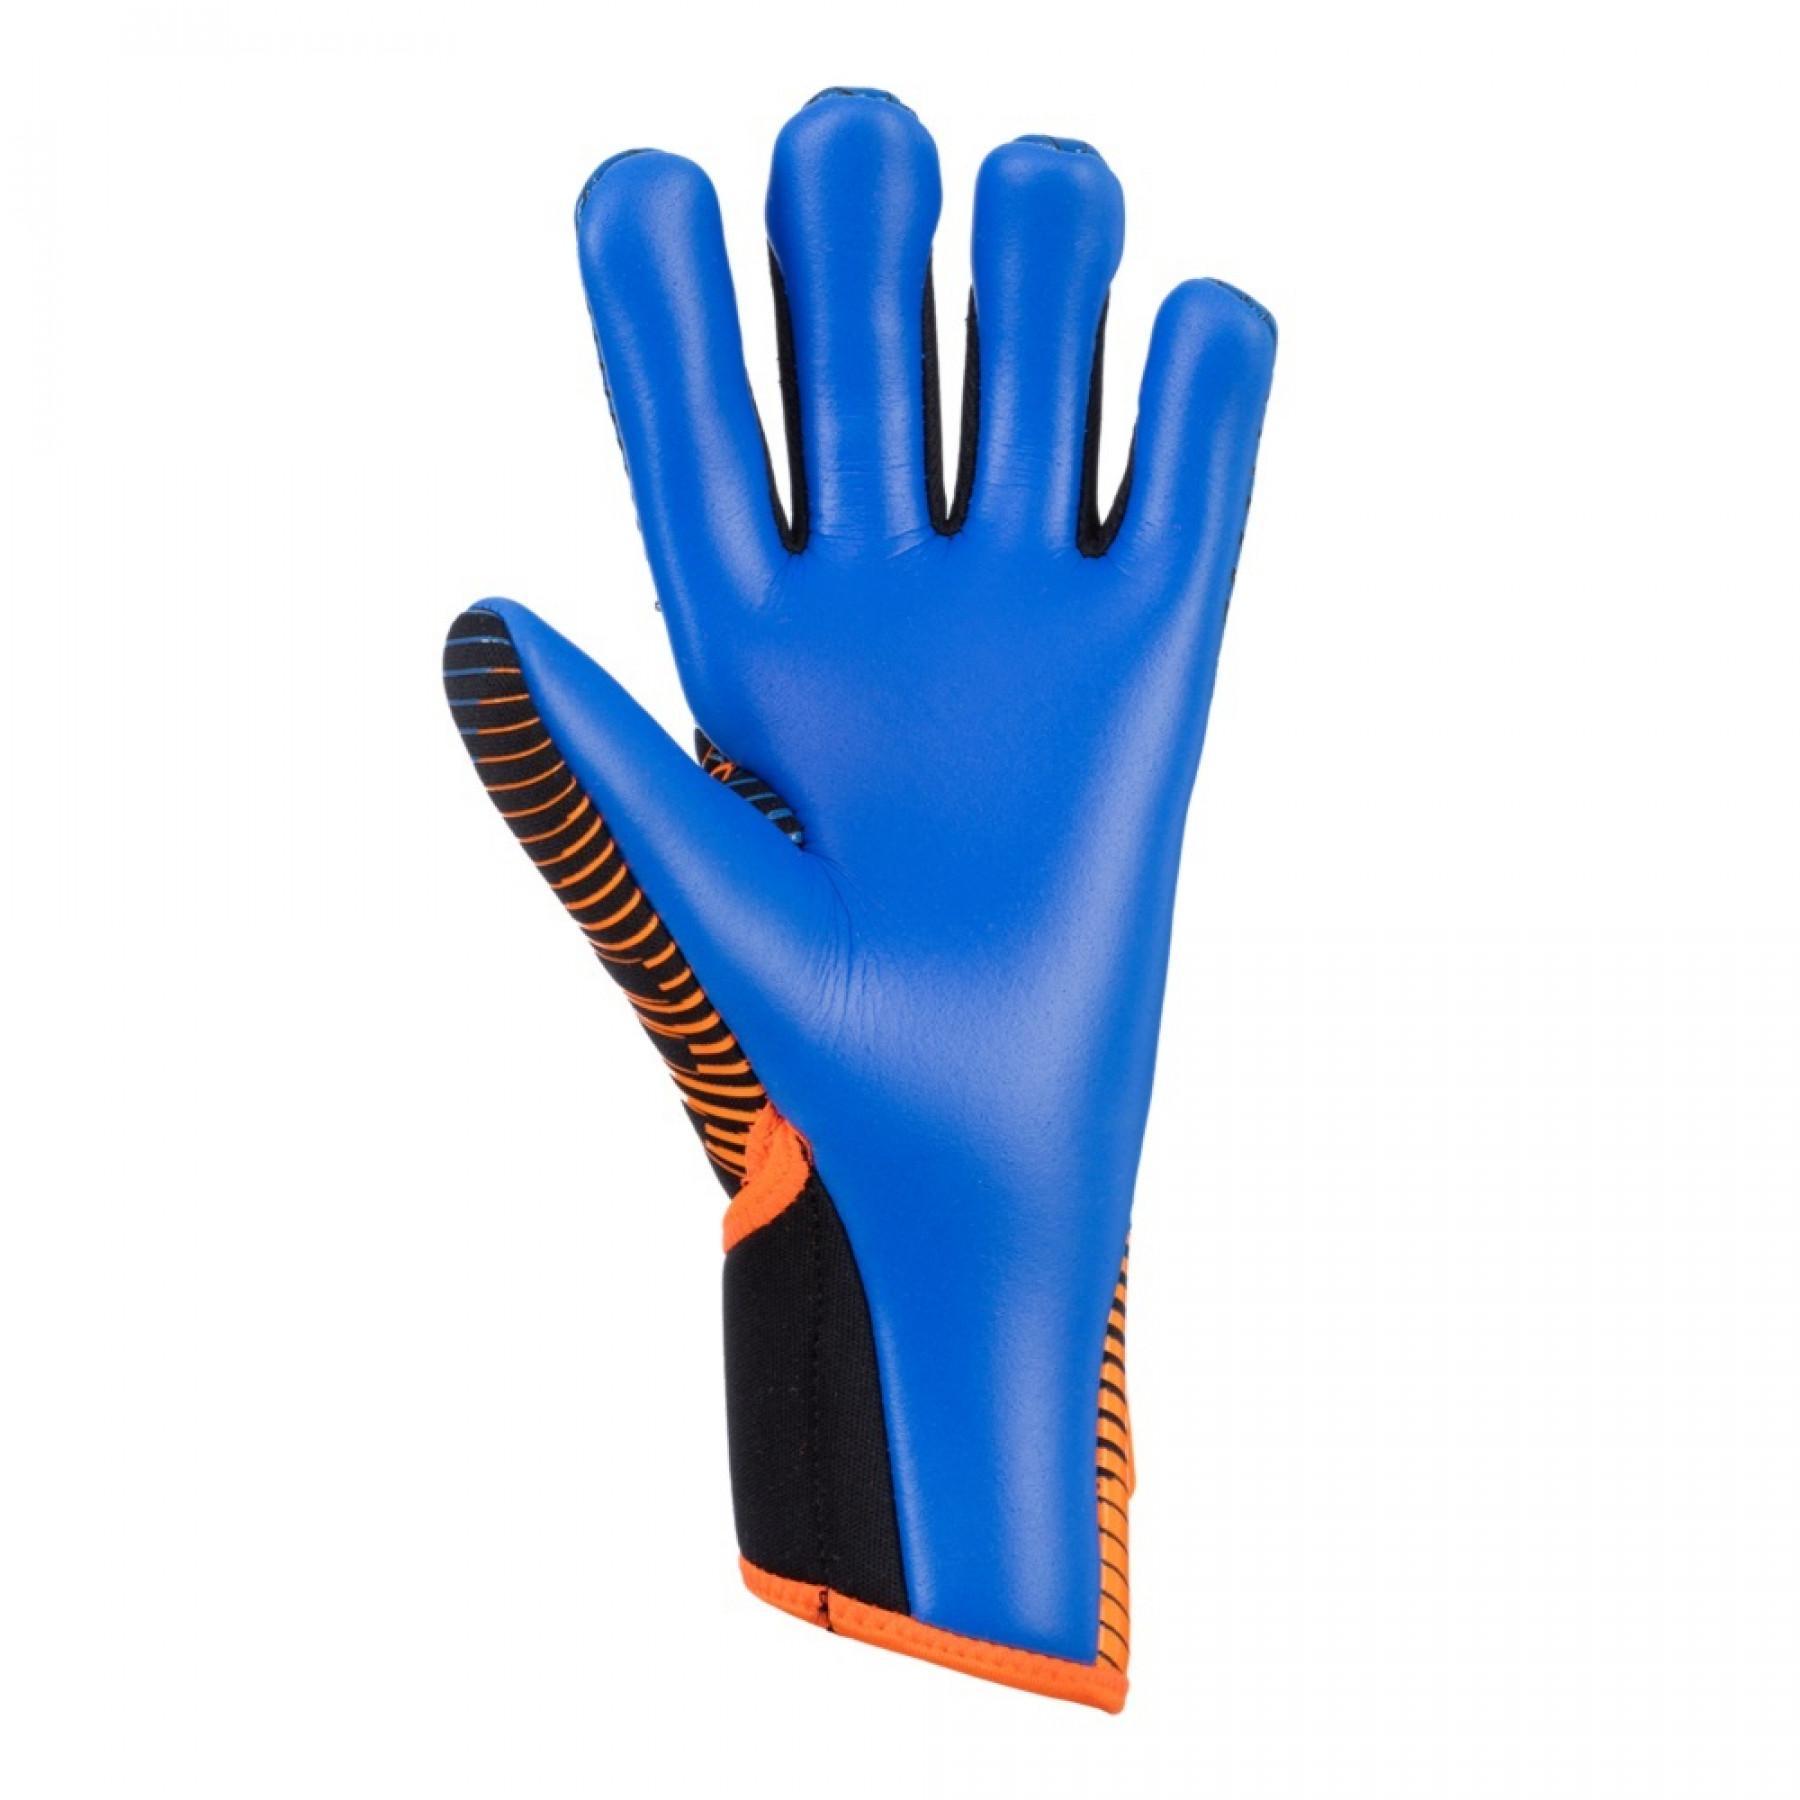 Goalkeeper gloves Reusch Pure Contact 3 S1